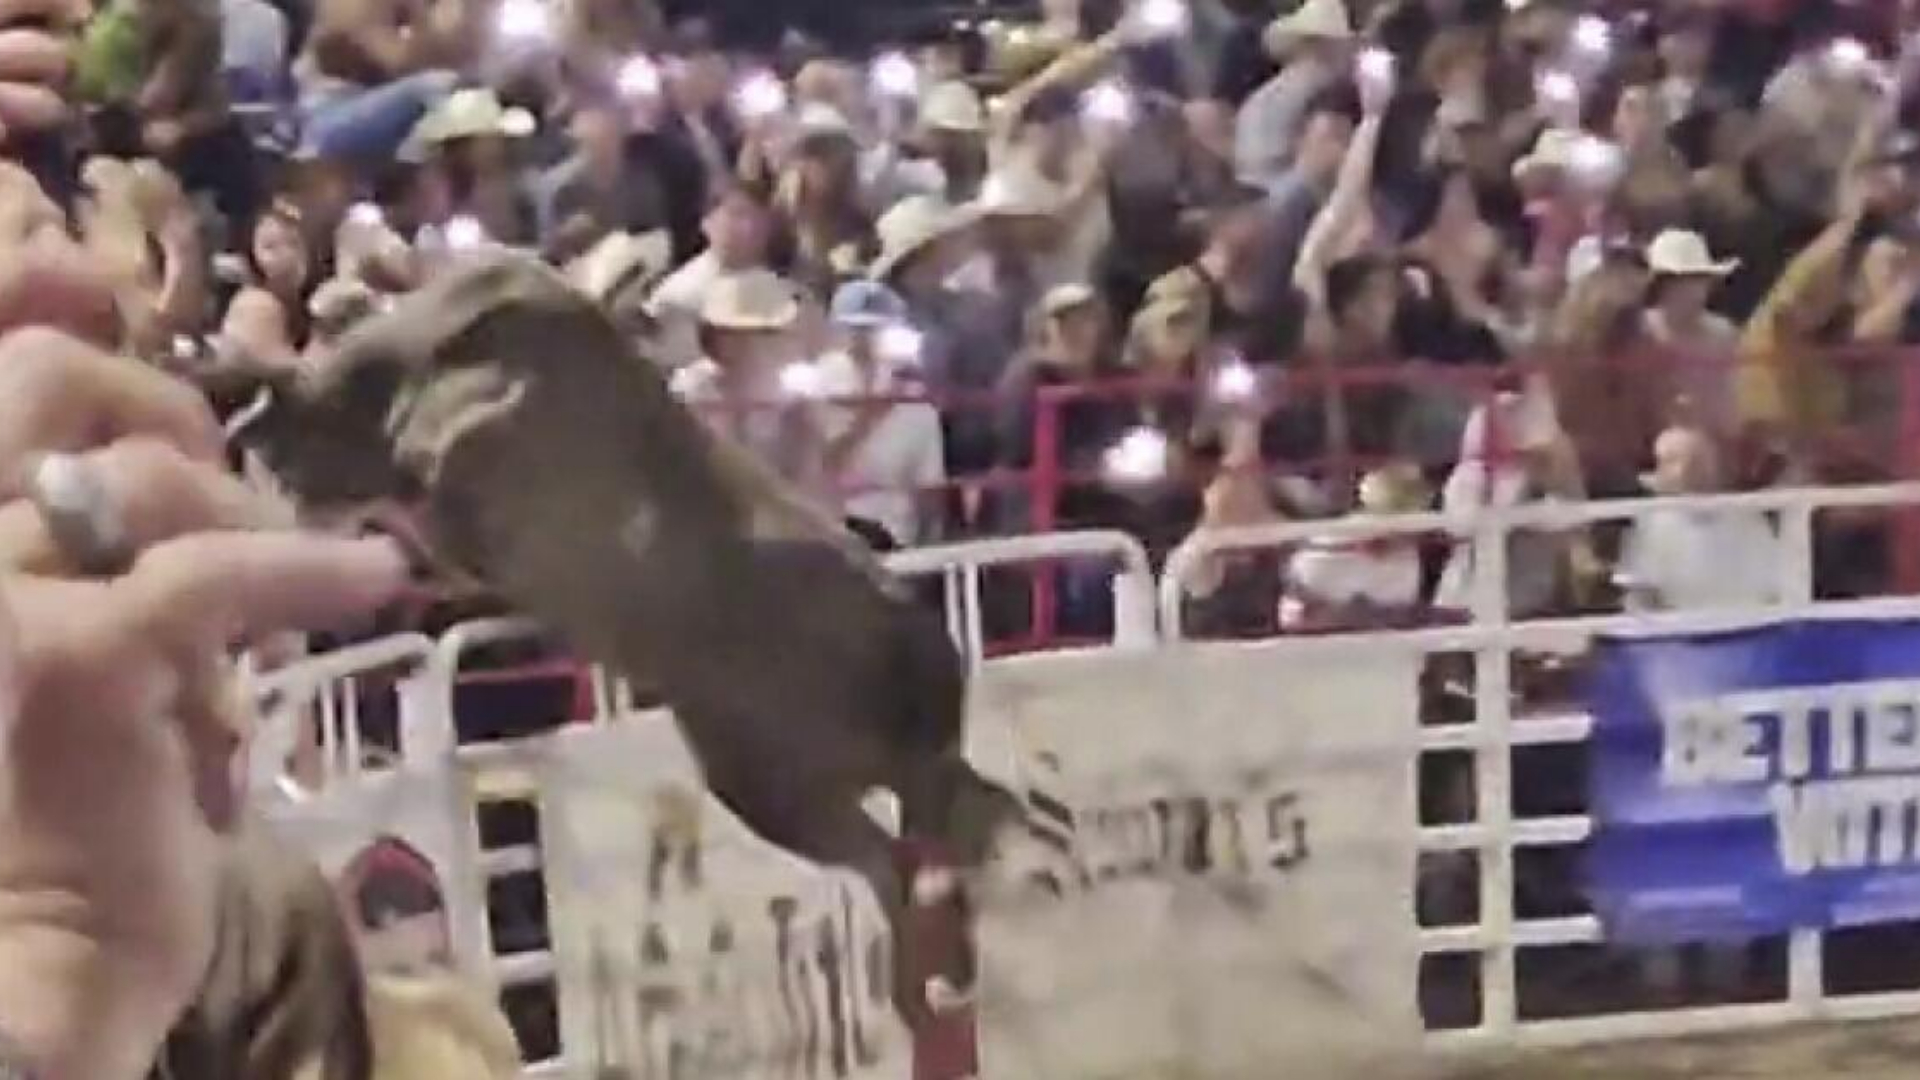 Toro salta hacia la multitud en un rodeo en EEUU